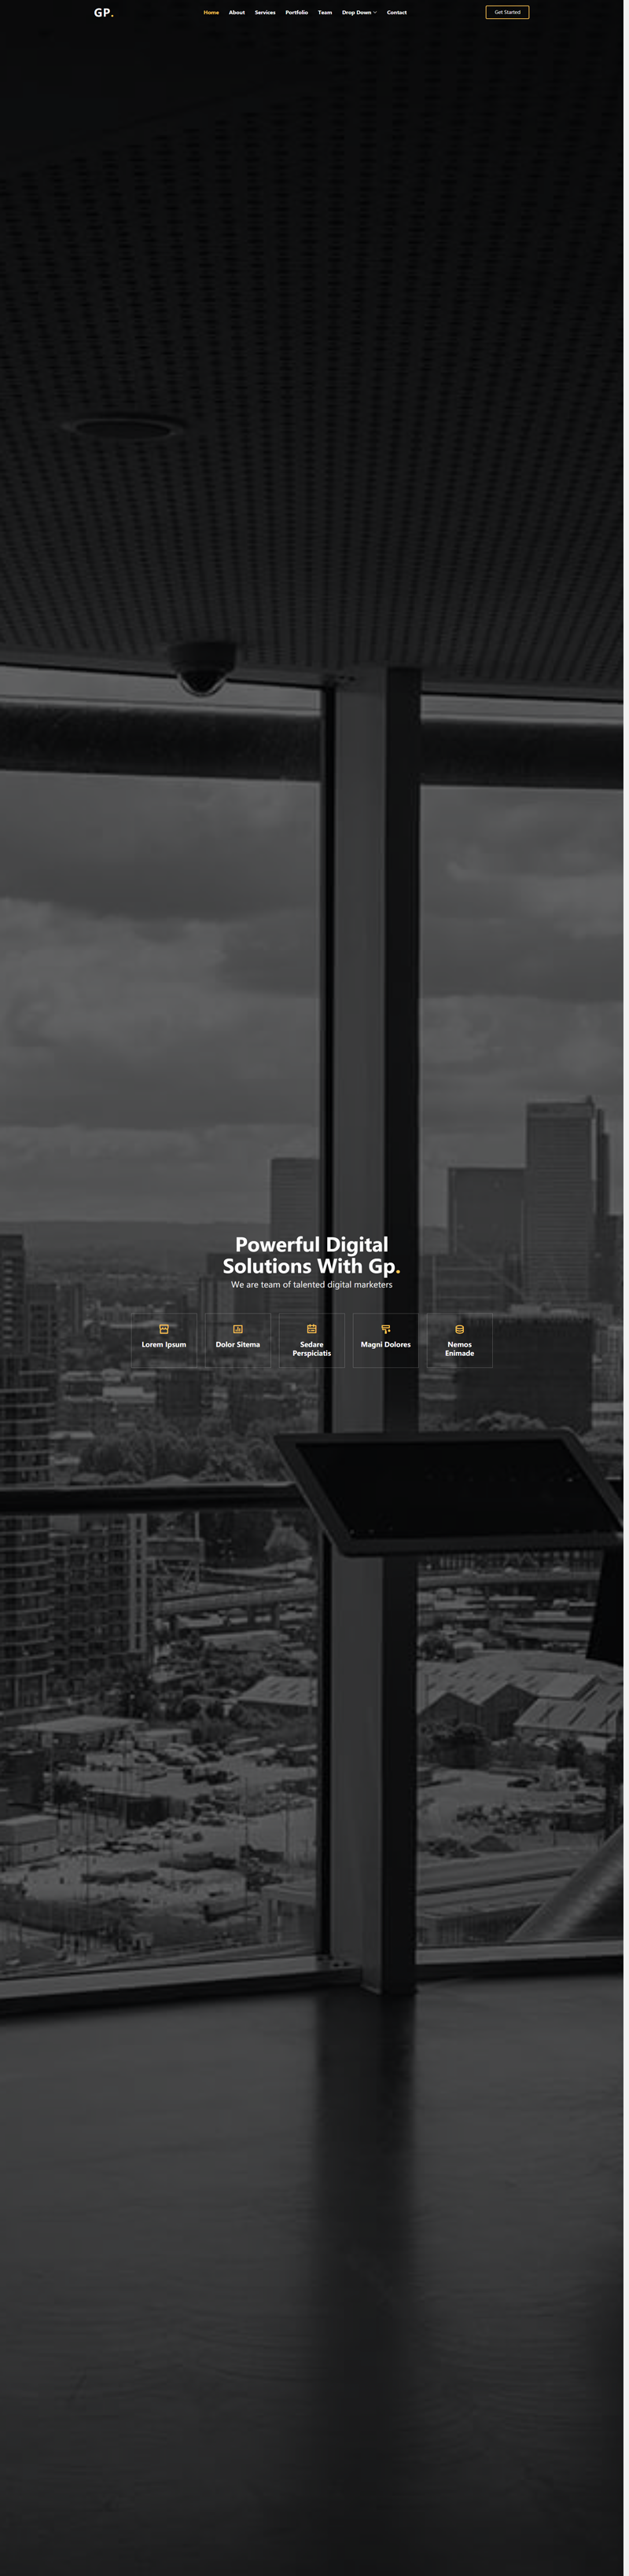 通用型黑色高级的企业展示网站模板下载